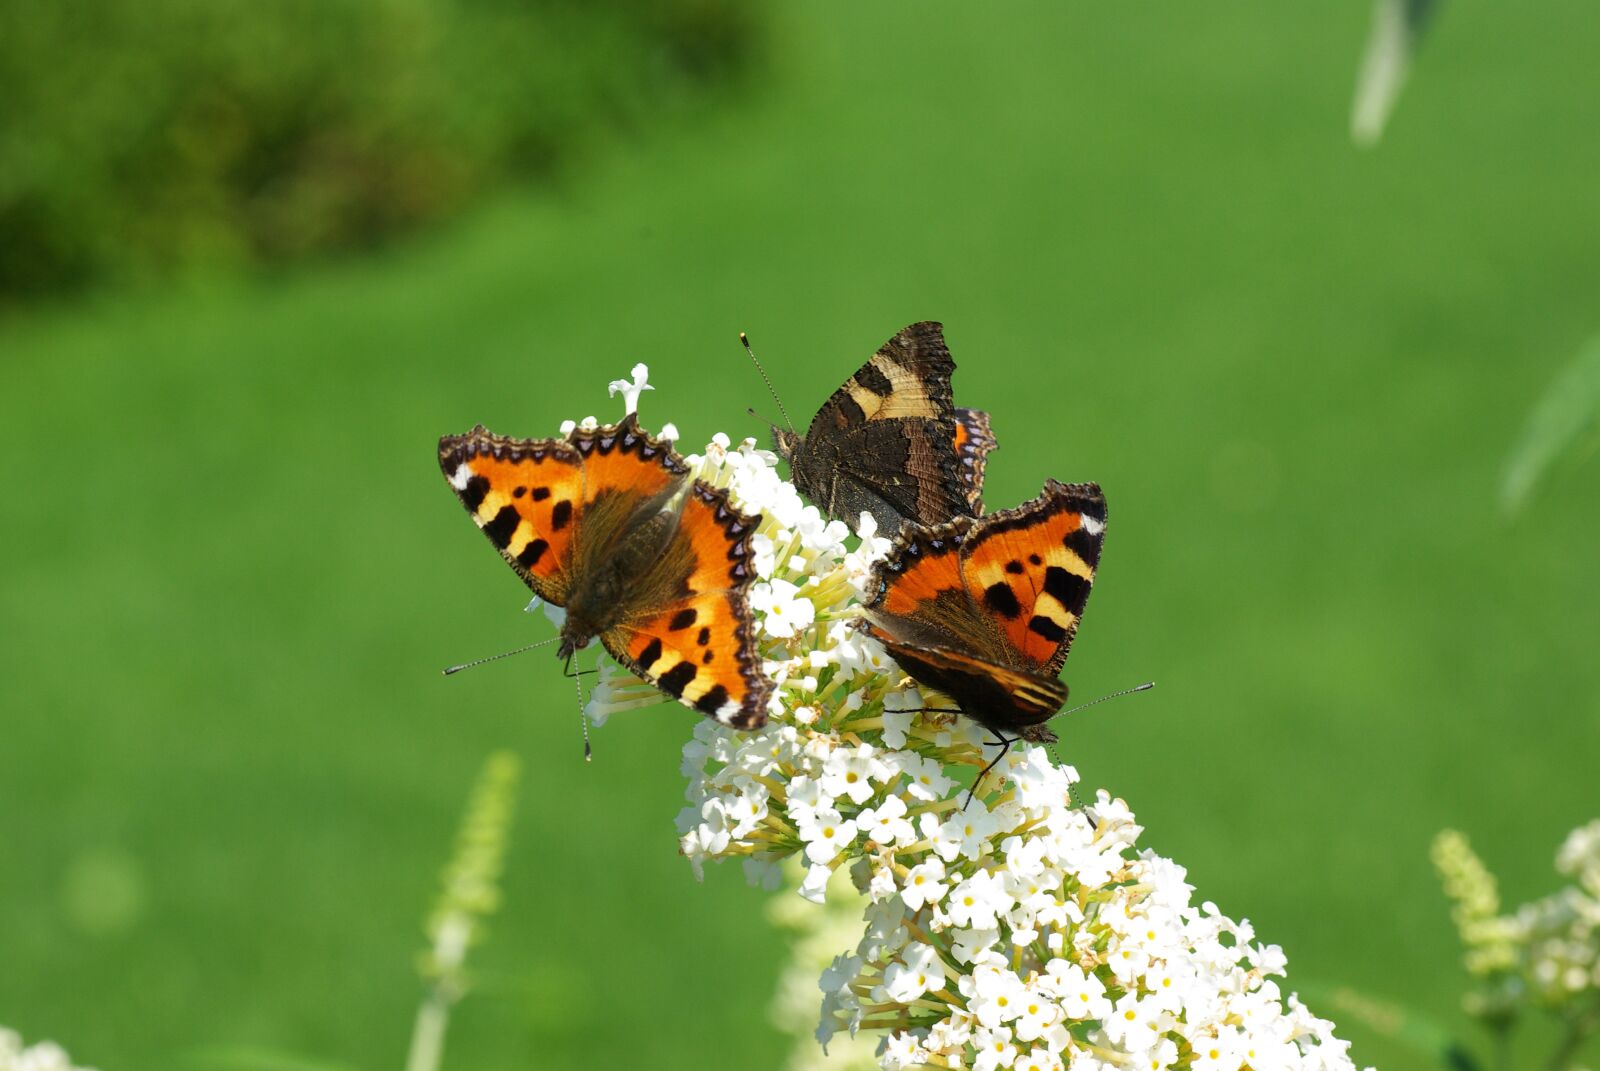 Pentax K10D sample photo. Butterflies, butterfly bush, sun photography